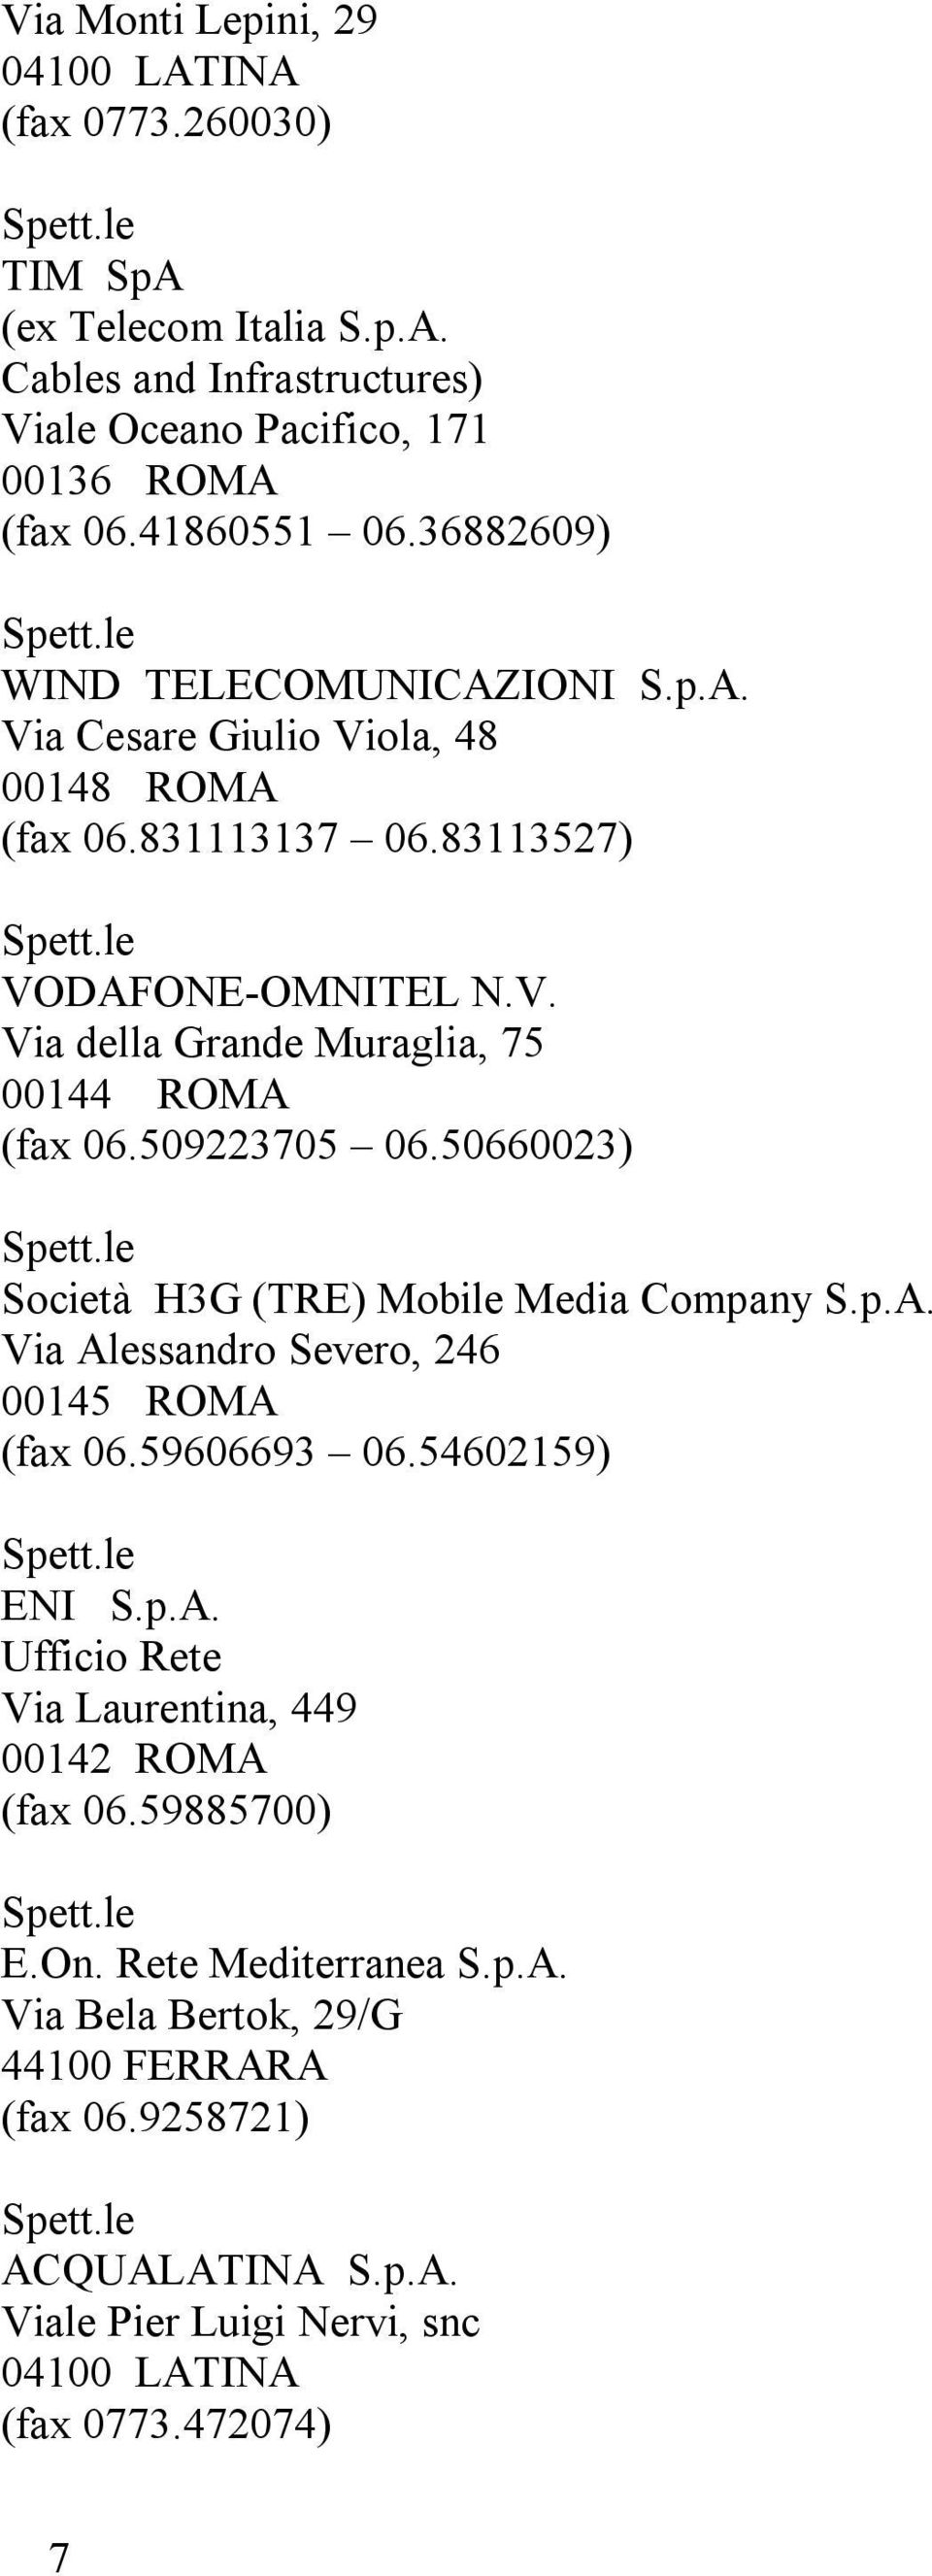 509223705 06.50660023) Società H3G (TRE) Mobile Media Company S.p.A. Via Alessandro Severo, 246 00145 ROMA (fax 06.59606693 06.54602159) ENI S.p.A. Ufficio Rete Via Laurentina, 449 00142 ROMA (fax 06.